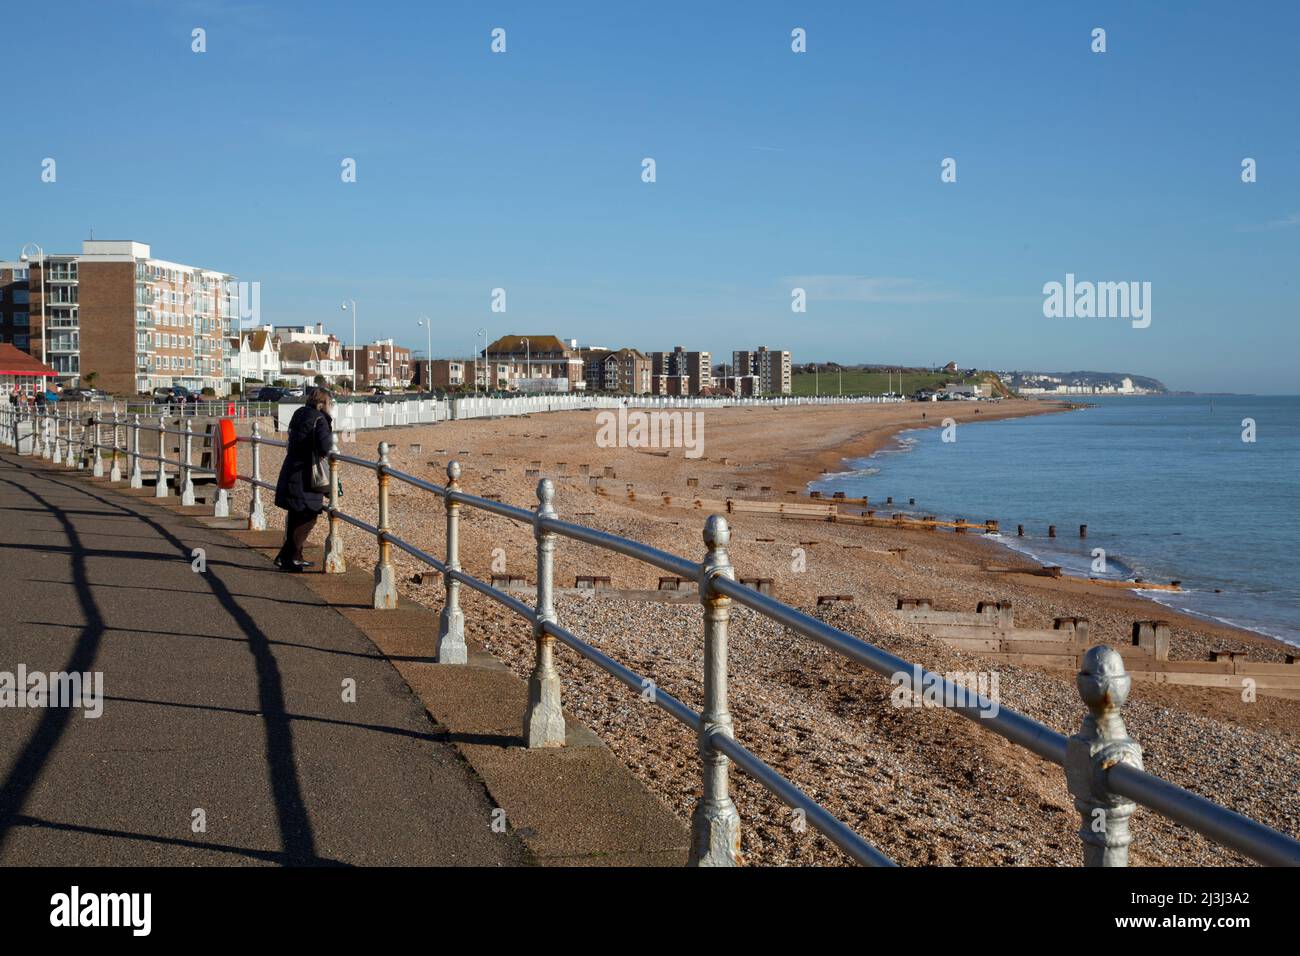 Bexhill-sur-mer, Sussex, la plage de la promenade avec des chemins de fer et une personne regardant la mer Banque D'Images